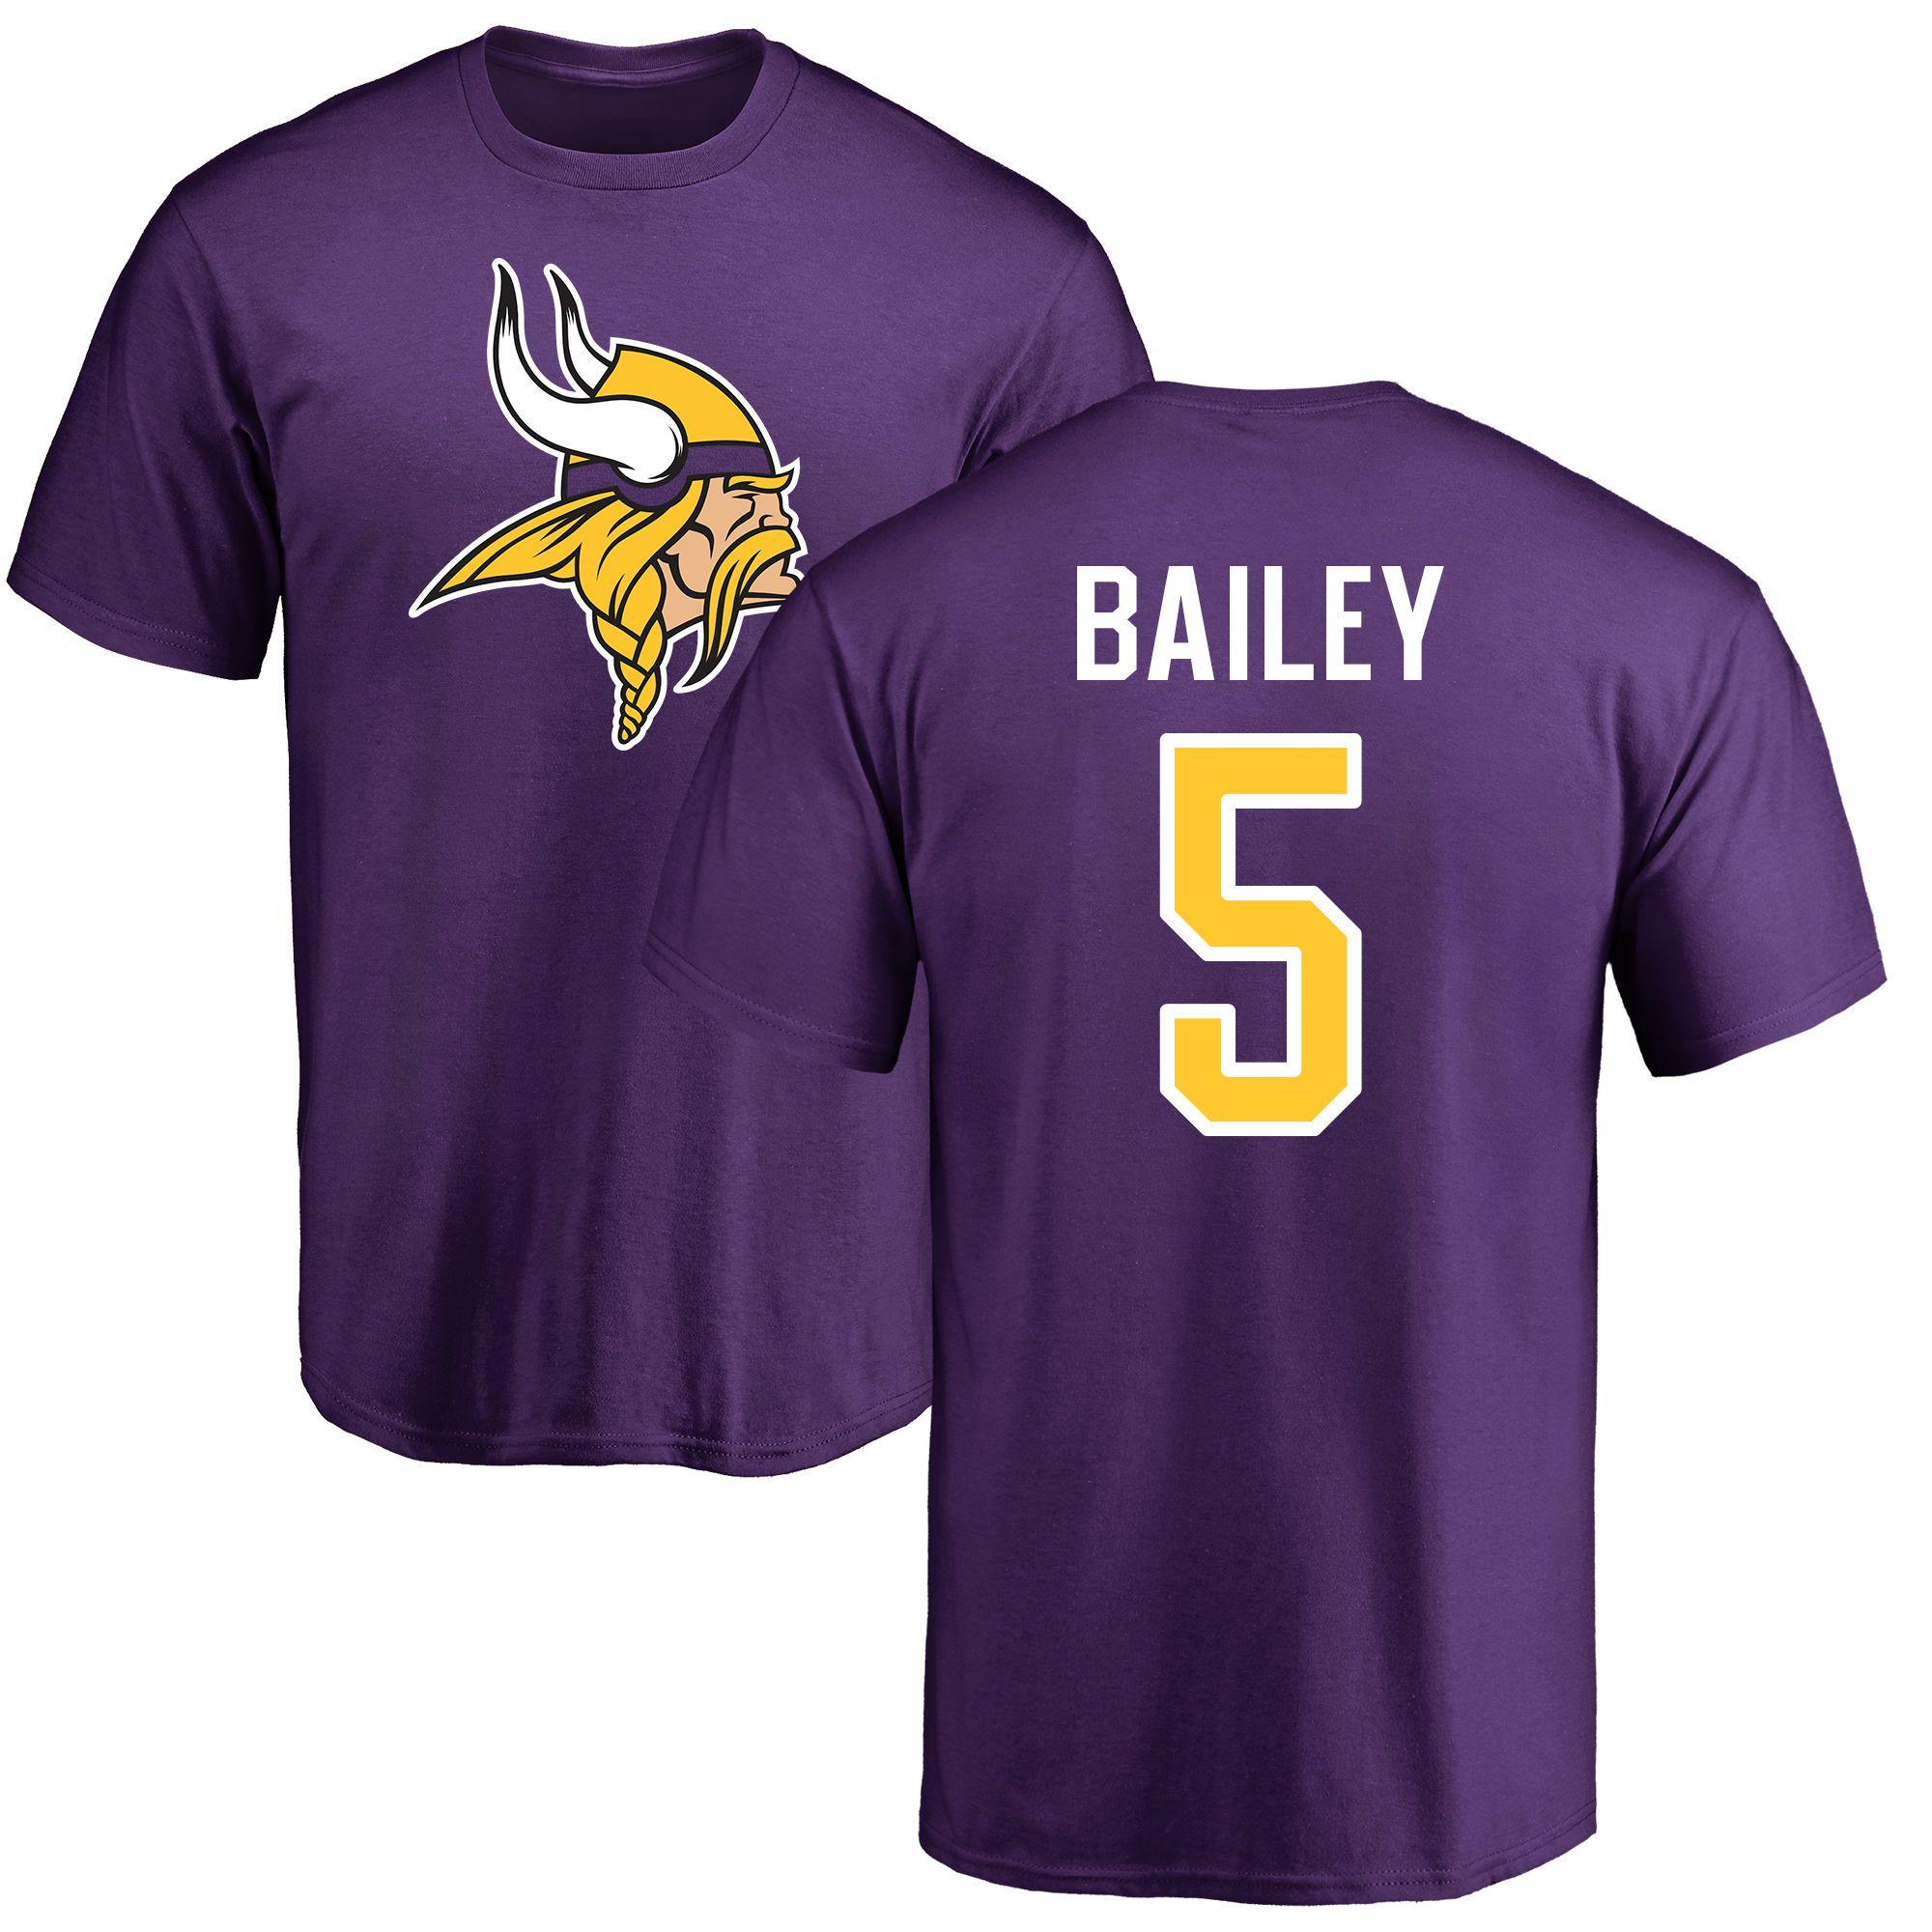 Bailey Name Logo - LogoDix